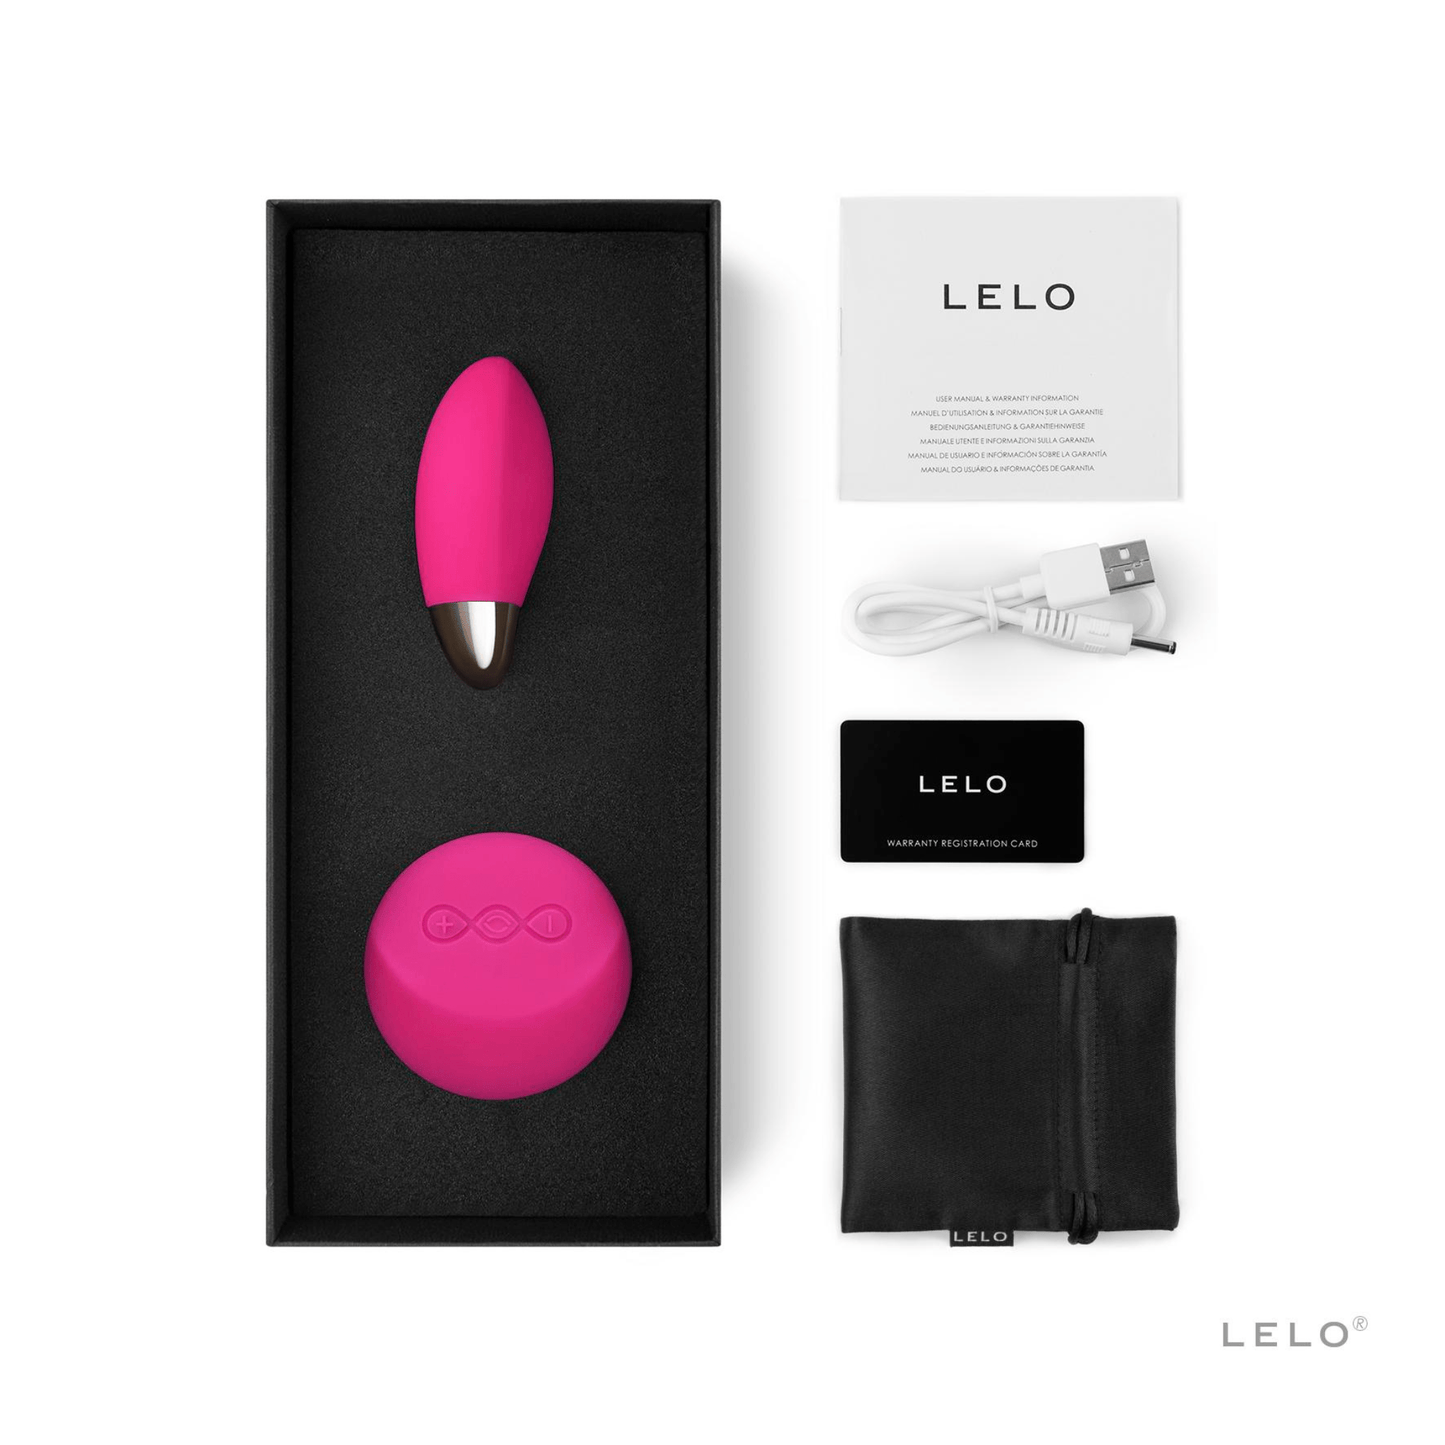 Oeuf vibrant Lyla 2 de Lelo en rose intense, télécommandé pour un plaisir discret, disponible sur OhMyGodz.fr, le loveshop de référence pour des sextoys de luxe et innovants.